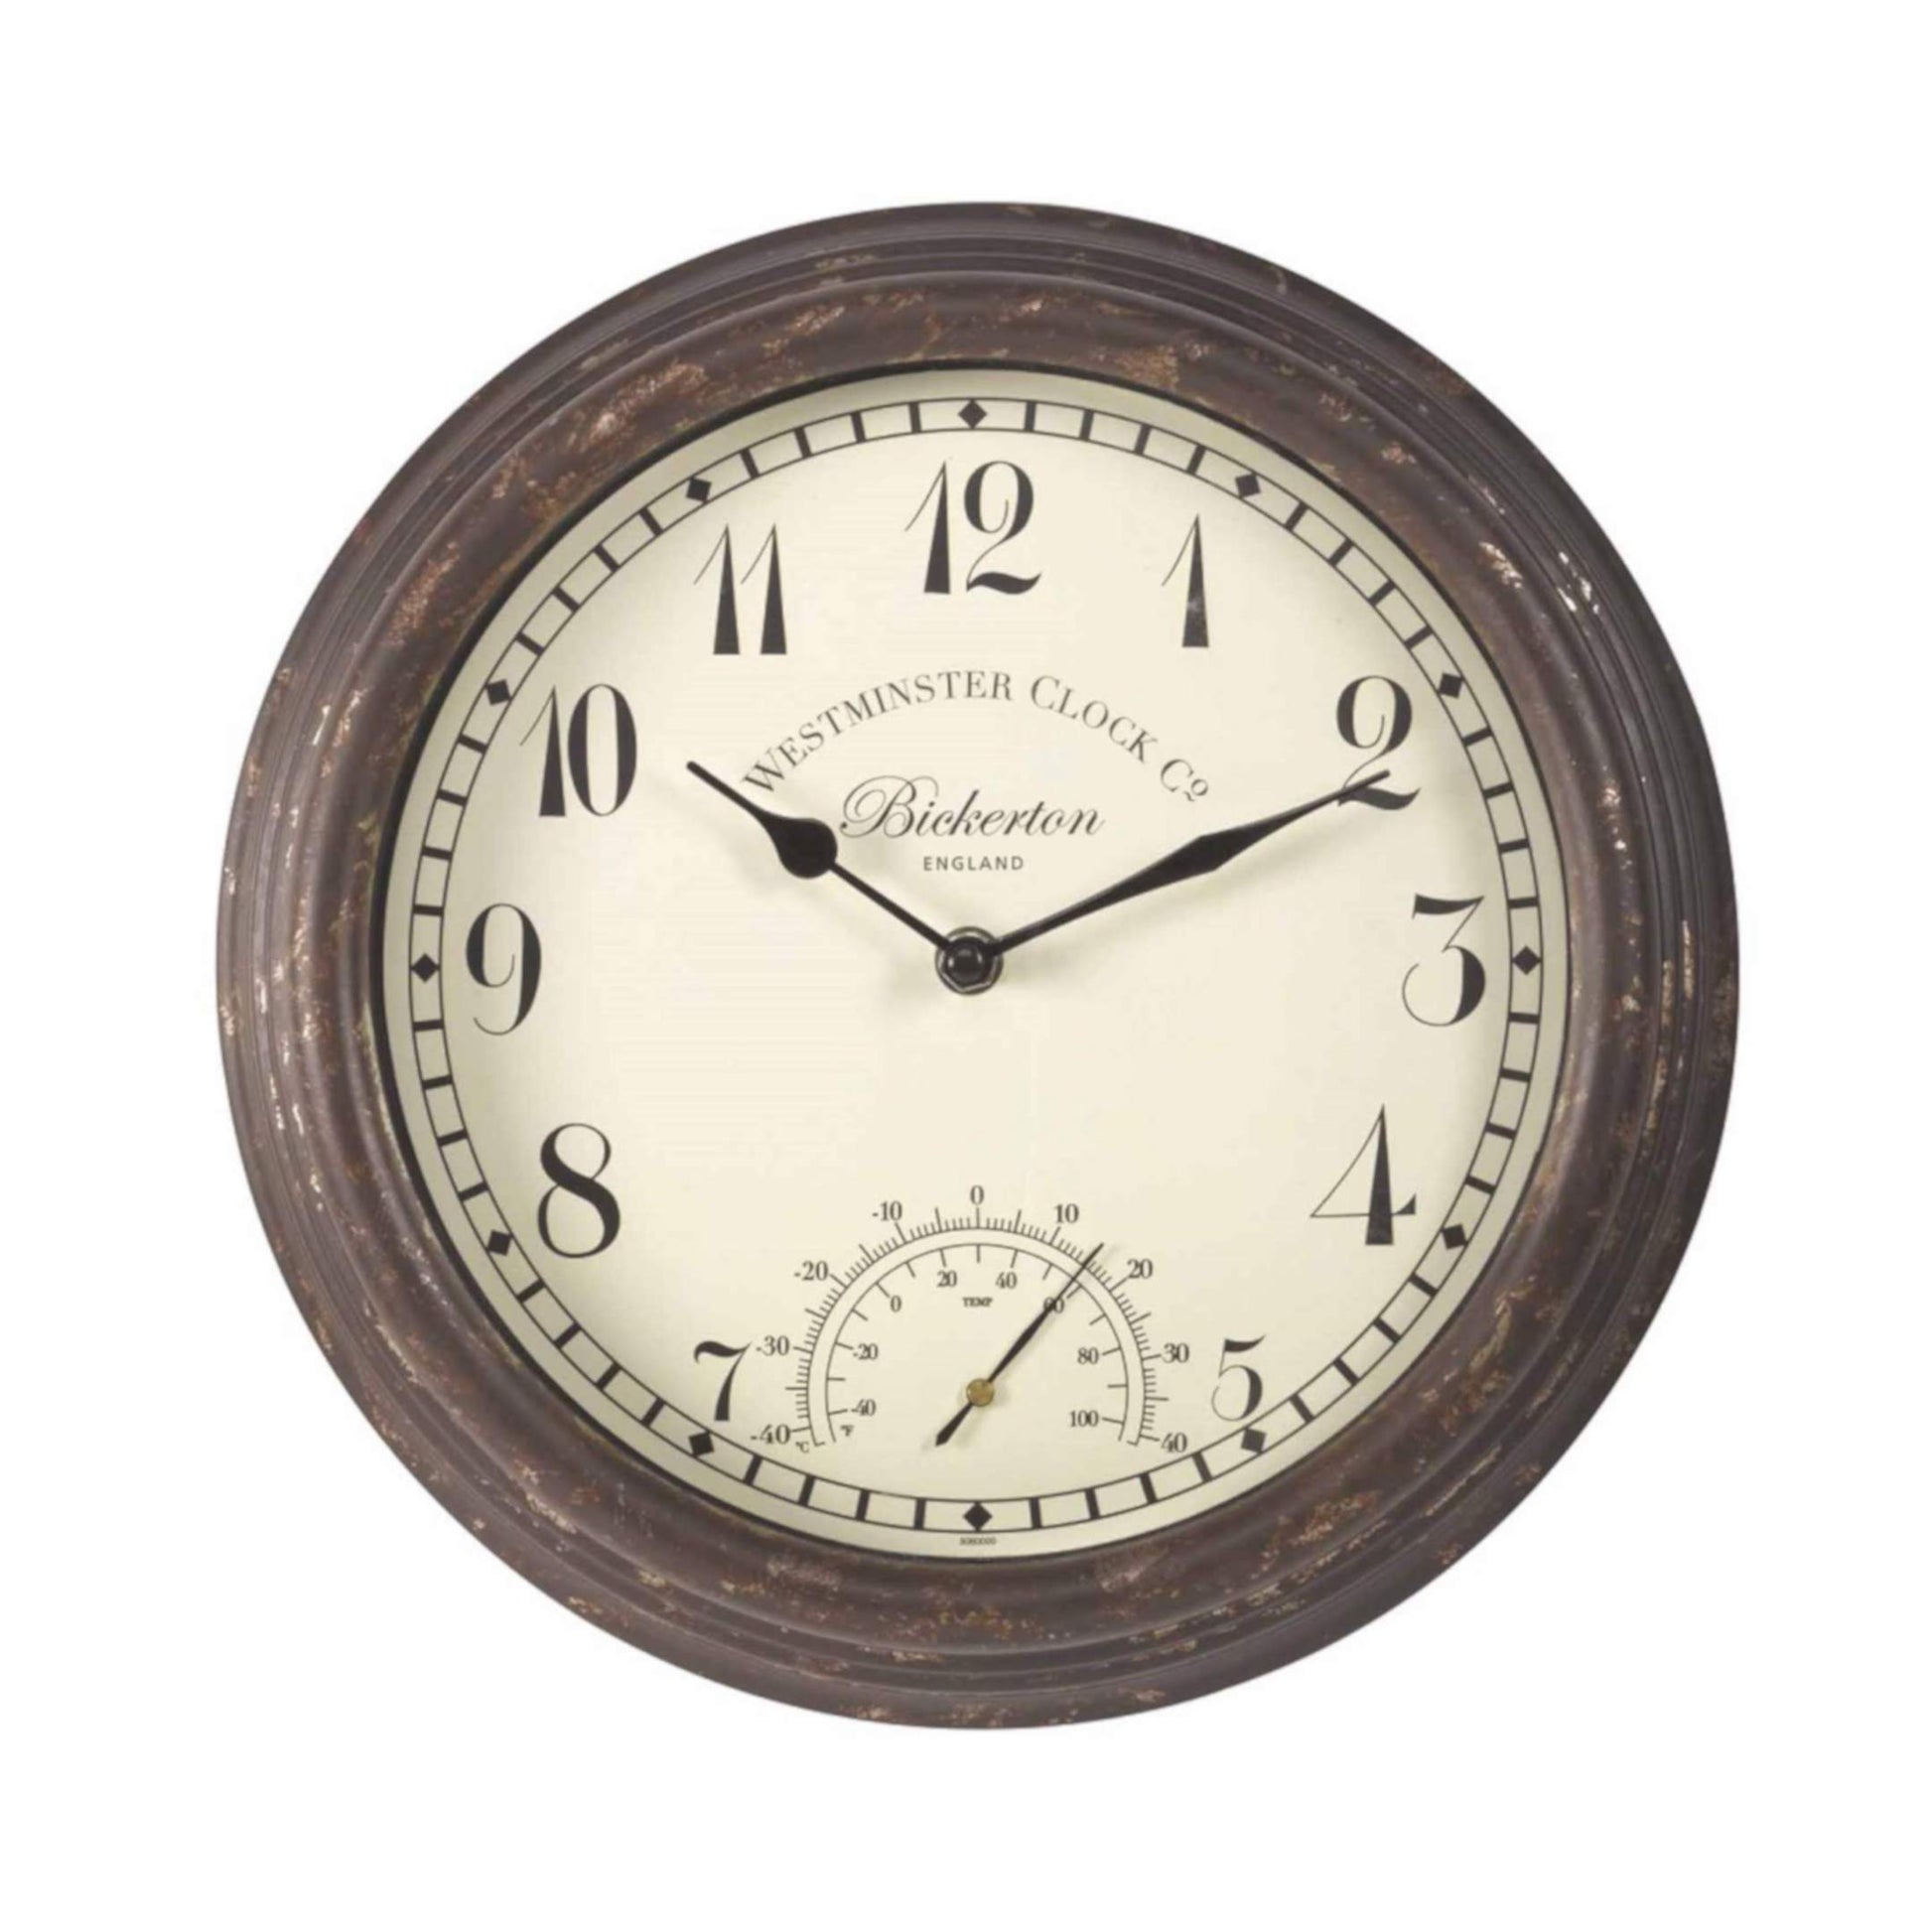 Štýlové nástenné hodiny Bickerton s výraznými arabskými číslicami a s teplomerom priemeru 30cm vhodné aj do exteriéru od OUTSIDE-IN designs